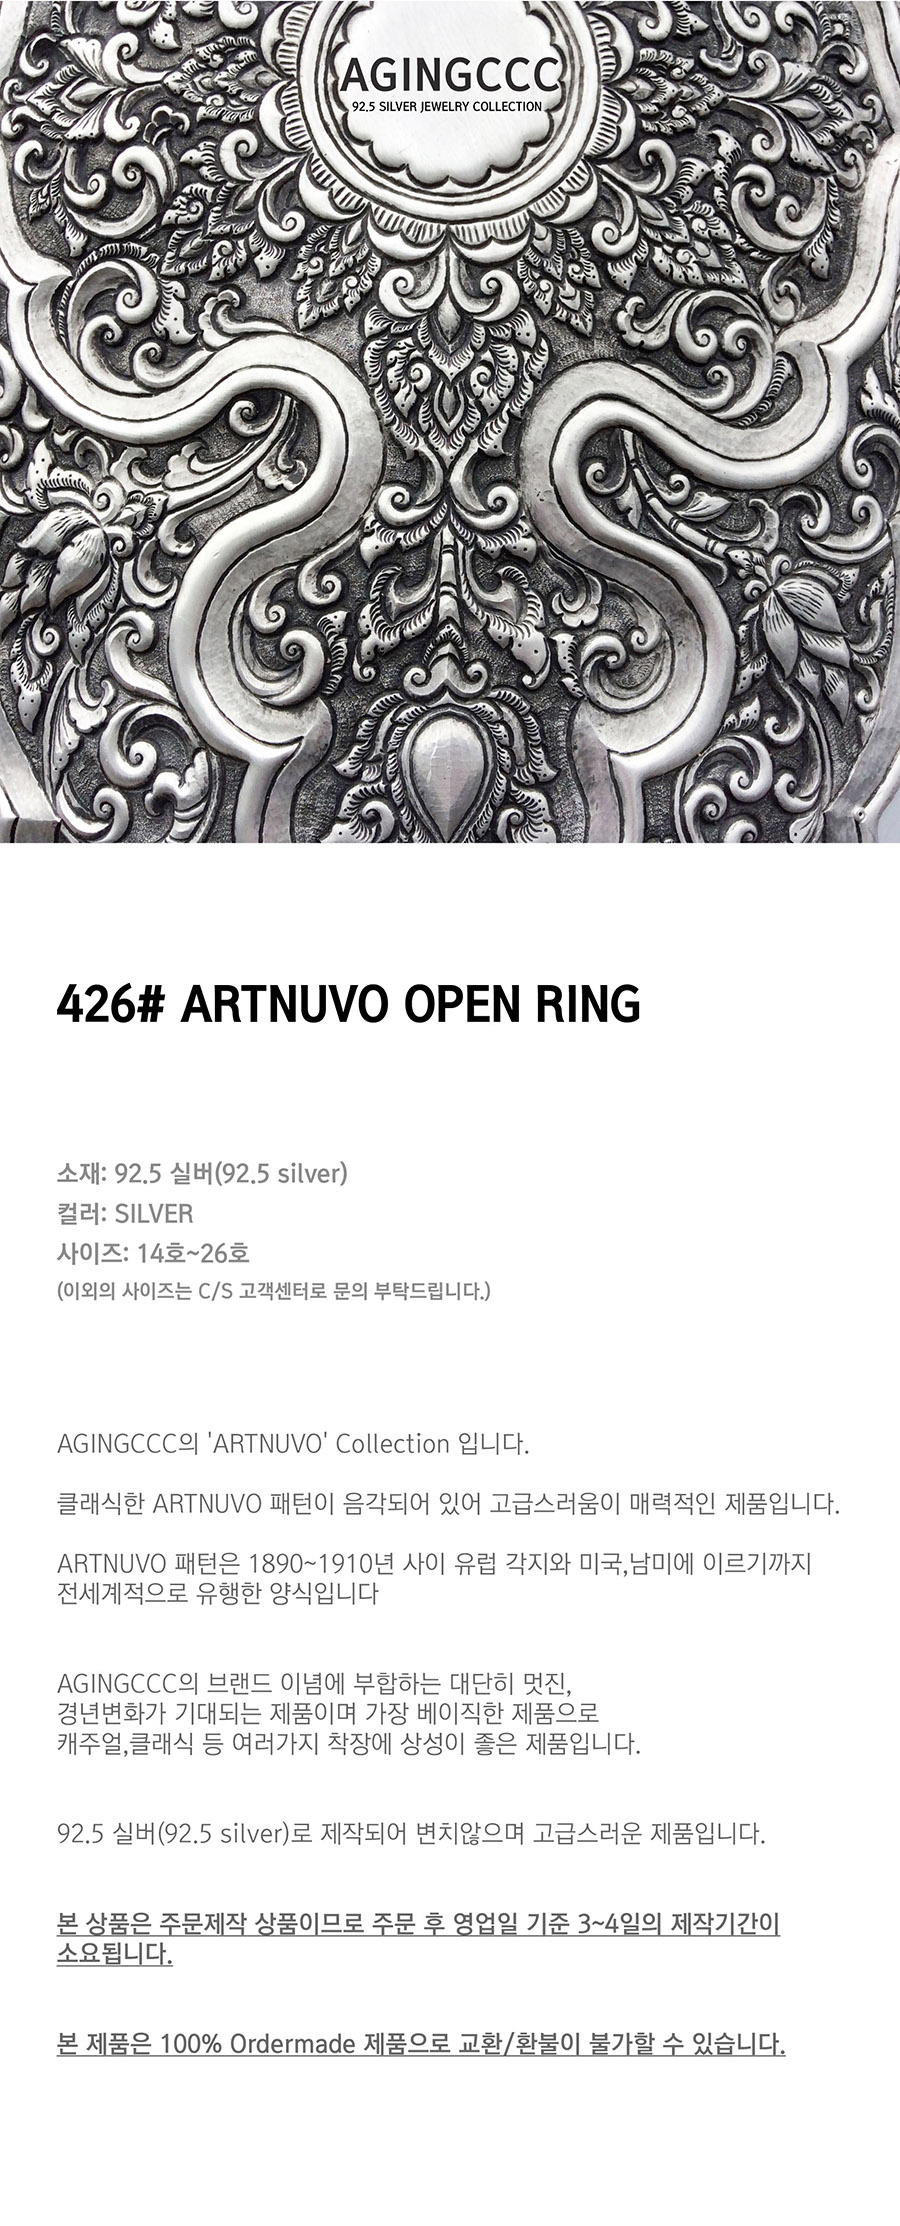 에이징씨씨씨(AGINGCCC) 426# ARTNUVO OPEN RING